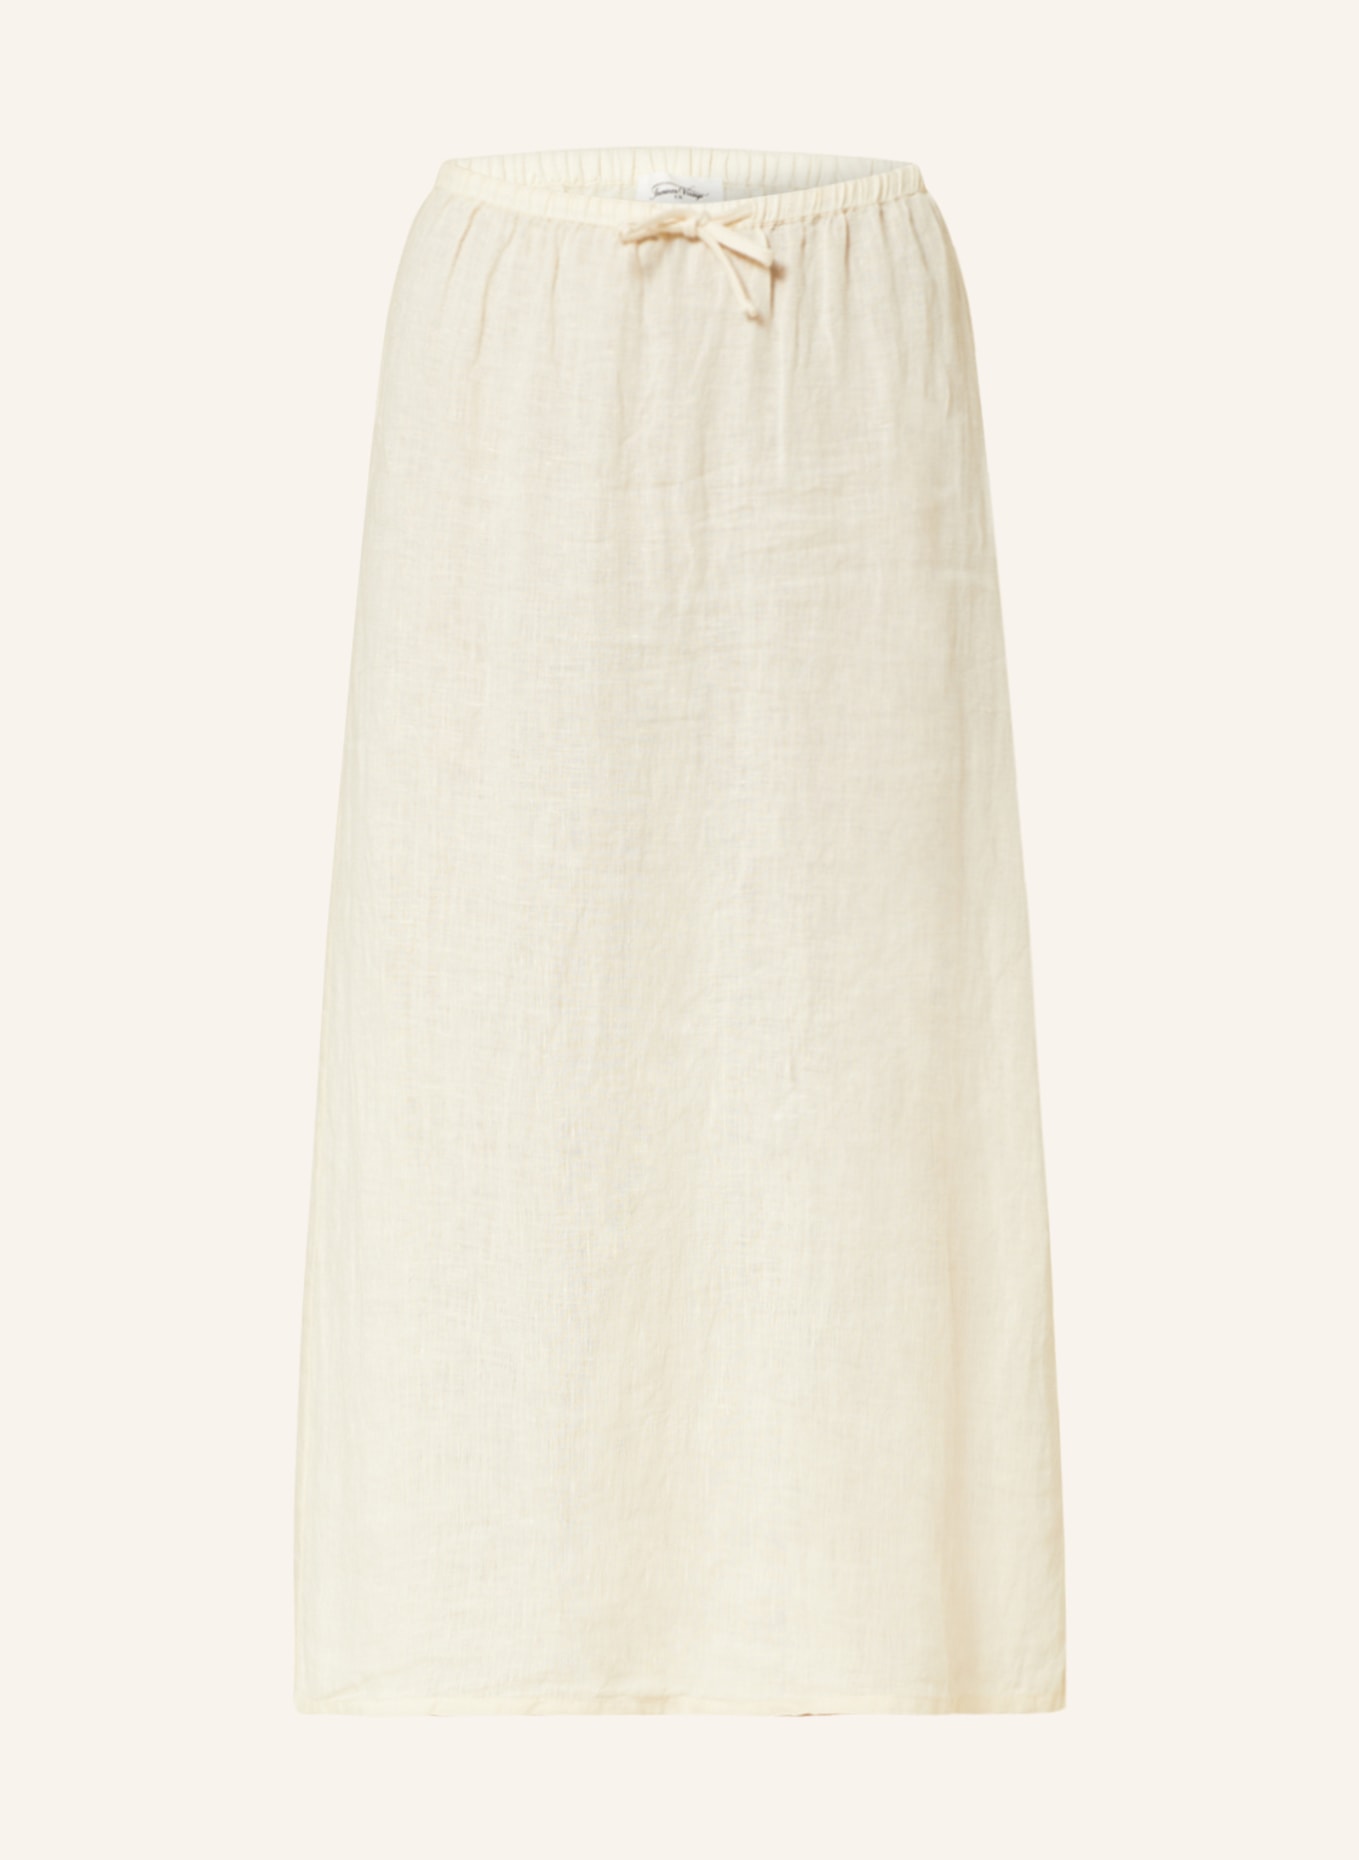 スカートus vintage linen skirt.